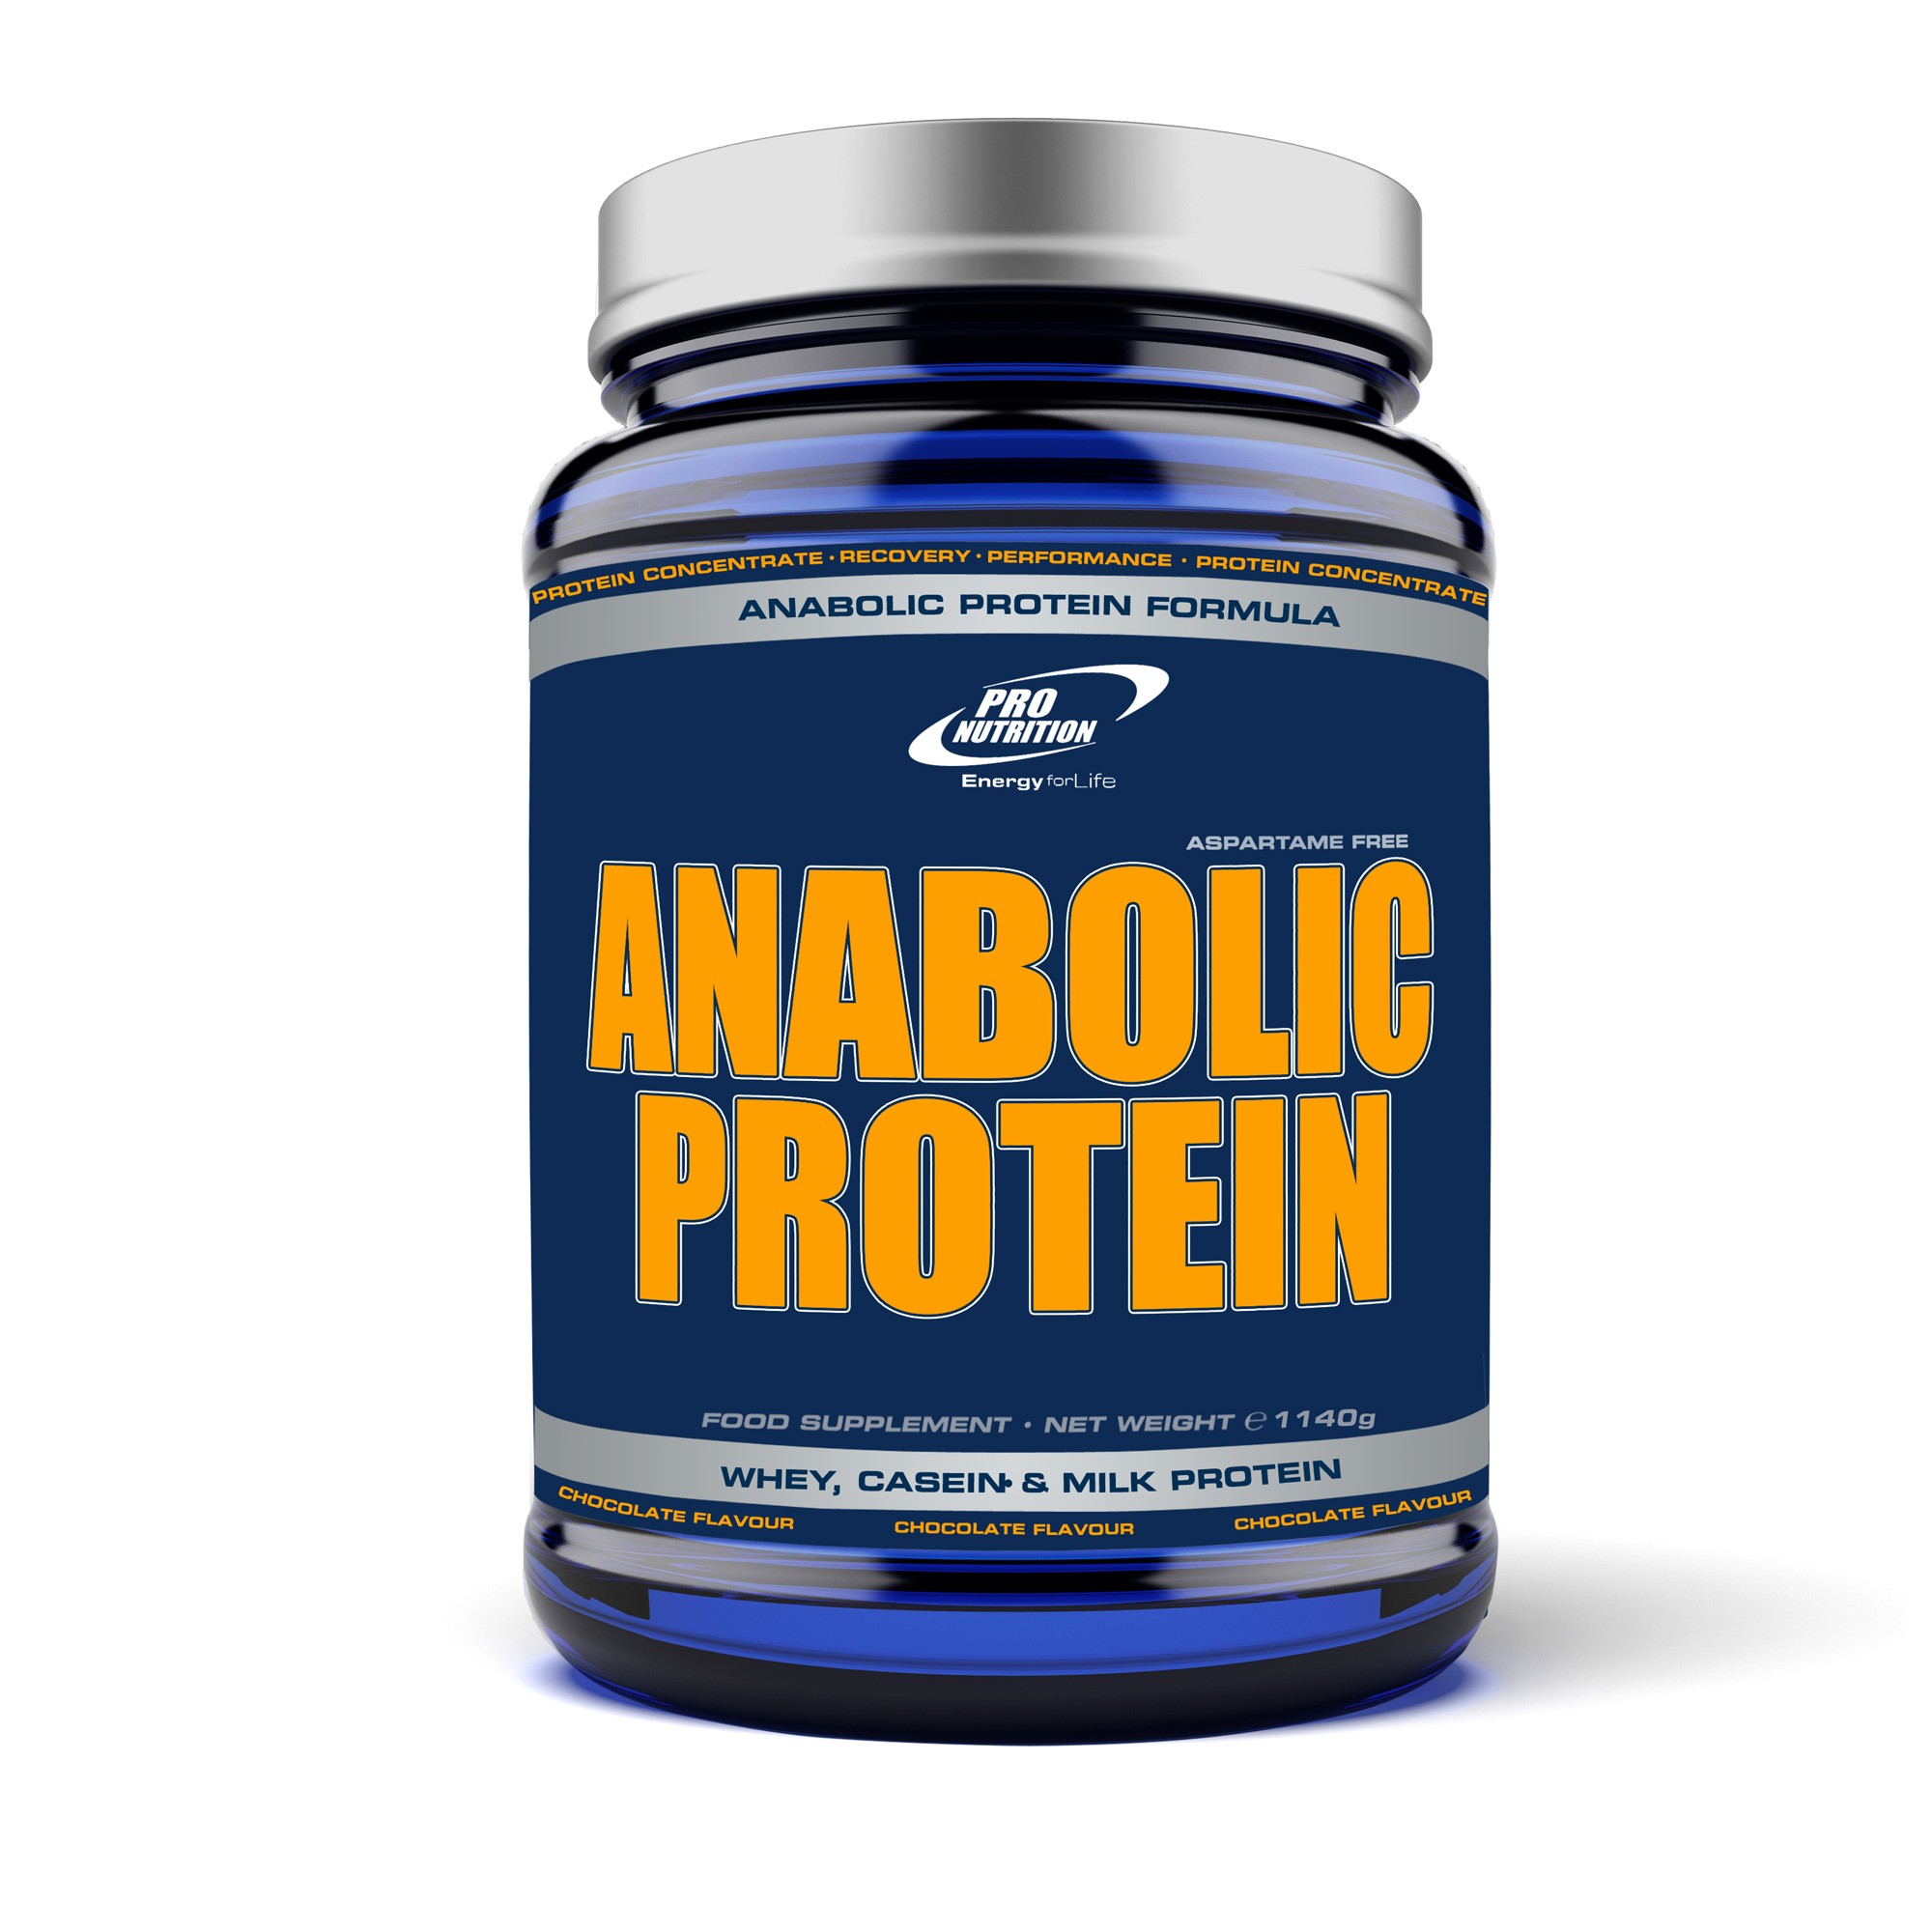 Anabolic Protein, diverse cantitati si arome - Pronutrition